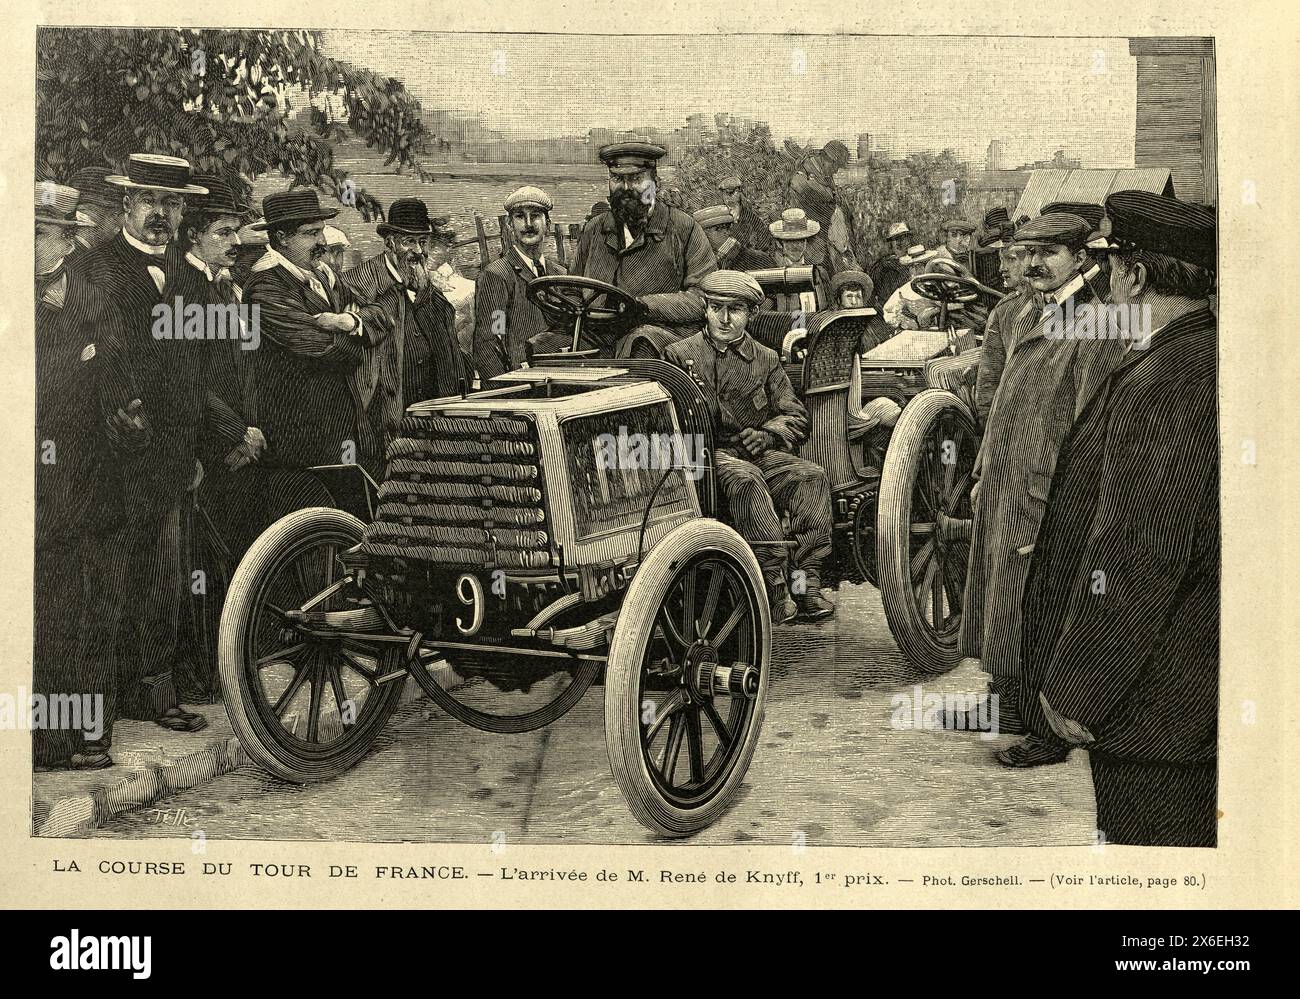 Photo vintage, Tour de France automobile, René de Knyff gagnant la première place, une course de voitures de sport organisée sur les routes de France, 1899 Banque D'Images